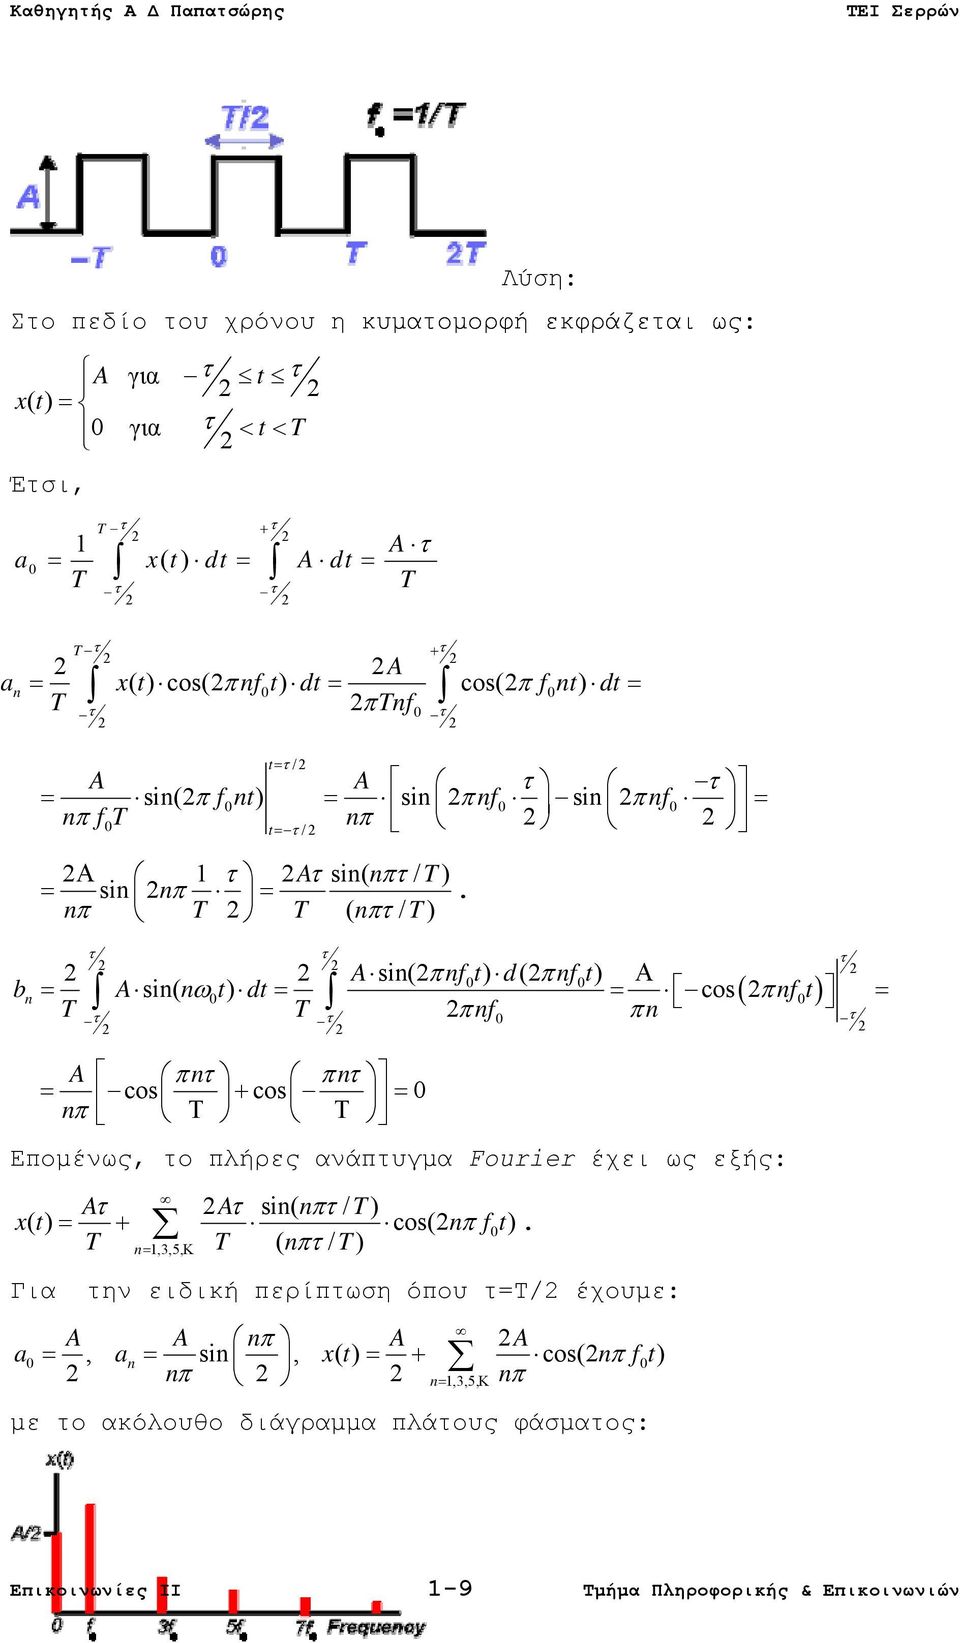 nπ T 2 T ( nπτ / T) τ τ τ 2 2 2 A sin(2 πnft 0 ) d(2 πnft 0 ) Α sin( ω0 ) cos( 2π 0 ) τ τ 2π 0 π τ 2 2 2 2 2 bn = A n t dt = = nf t = T T nf n A πnτ πnτ = cos + cos = 0 nπ Τ Τ Επομένως, το πλήρες